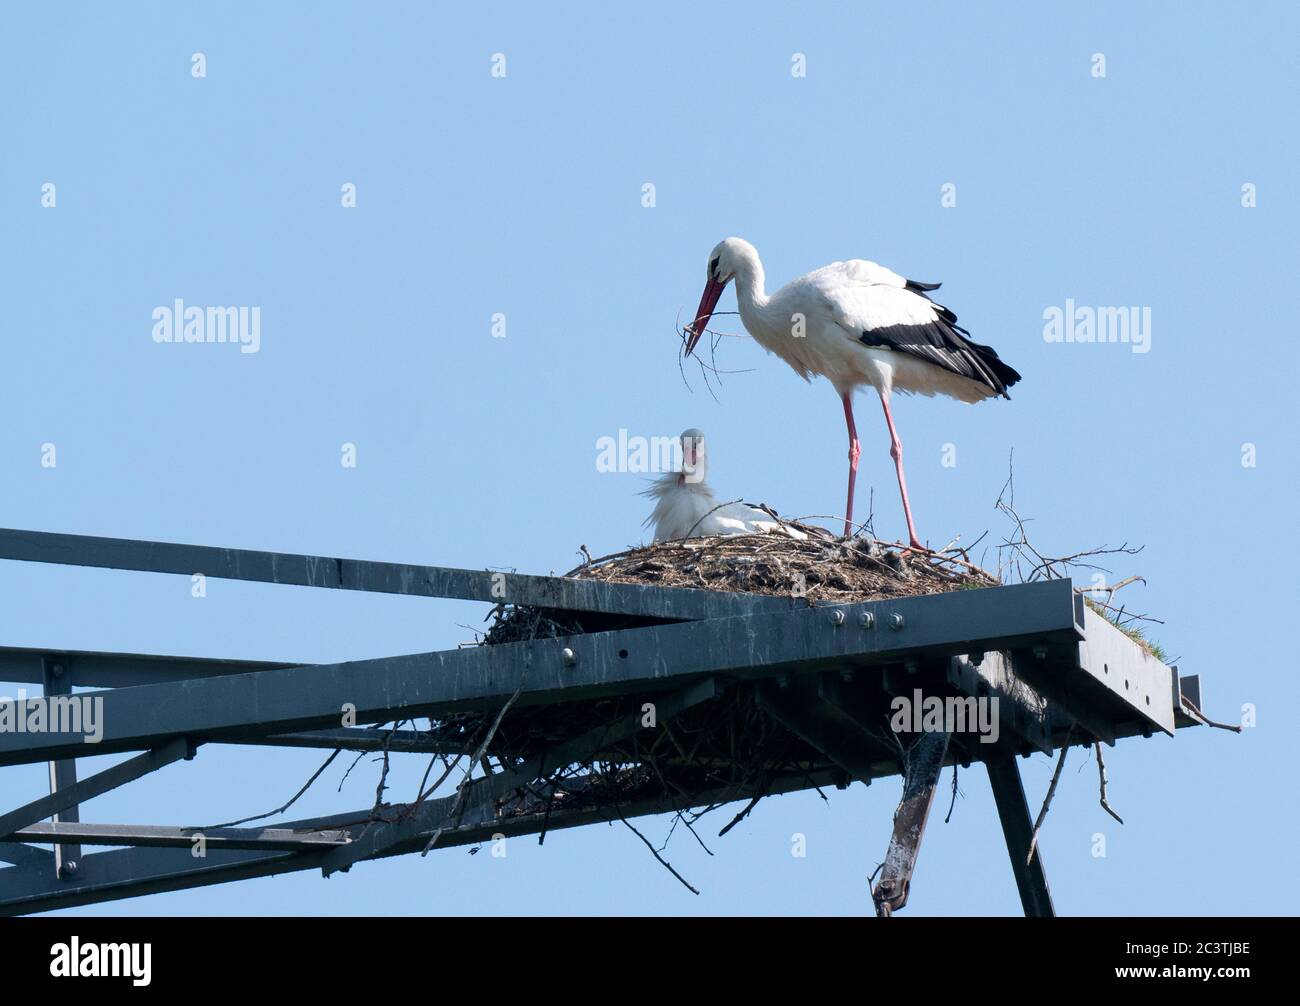 Ciconie blanche (Ciconia ciconia), paire dans un nid de ciconie sur un pylône électrique, pays-Bas, Lelystad Banque D'Images